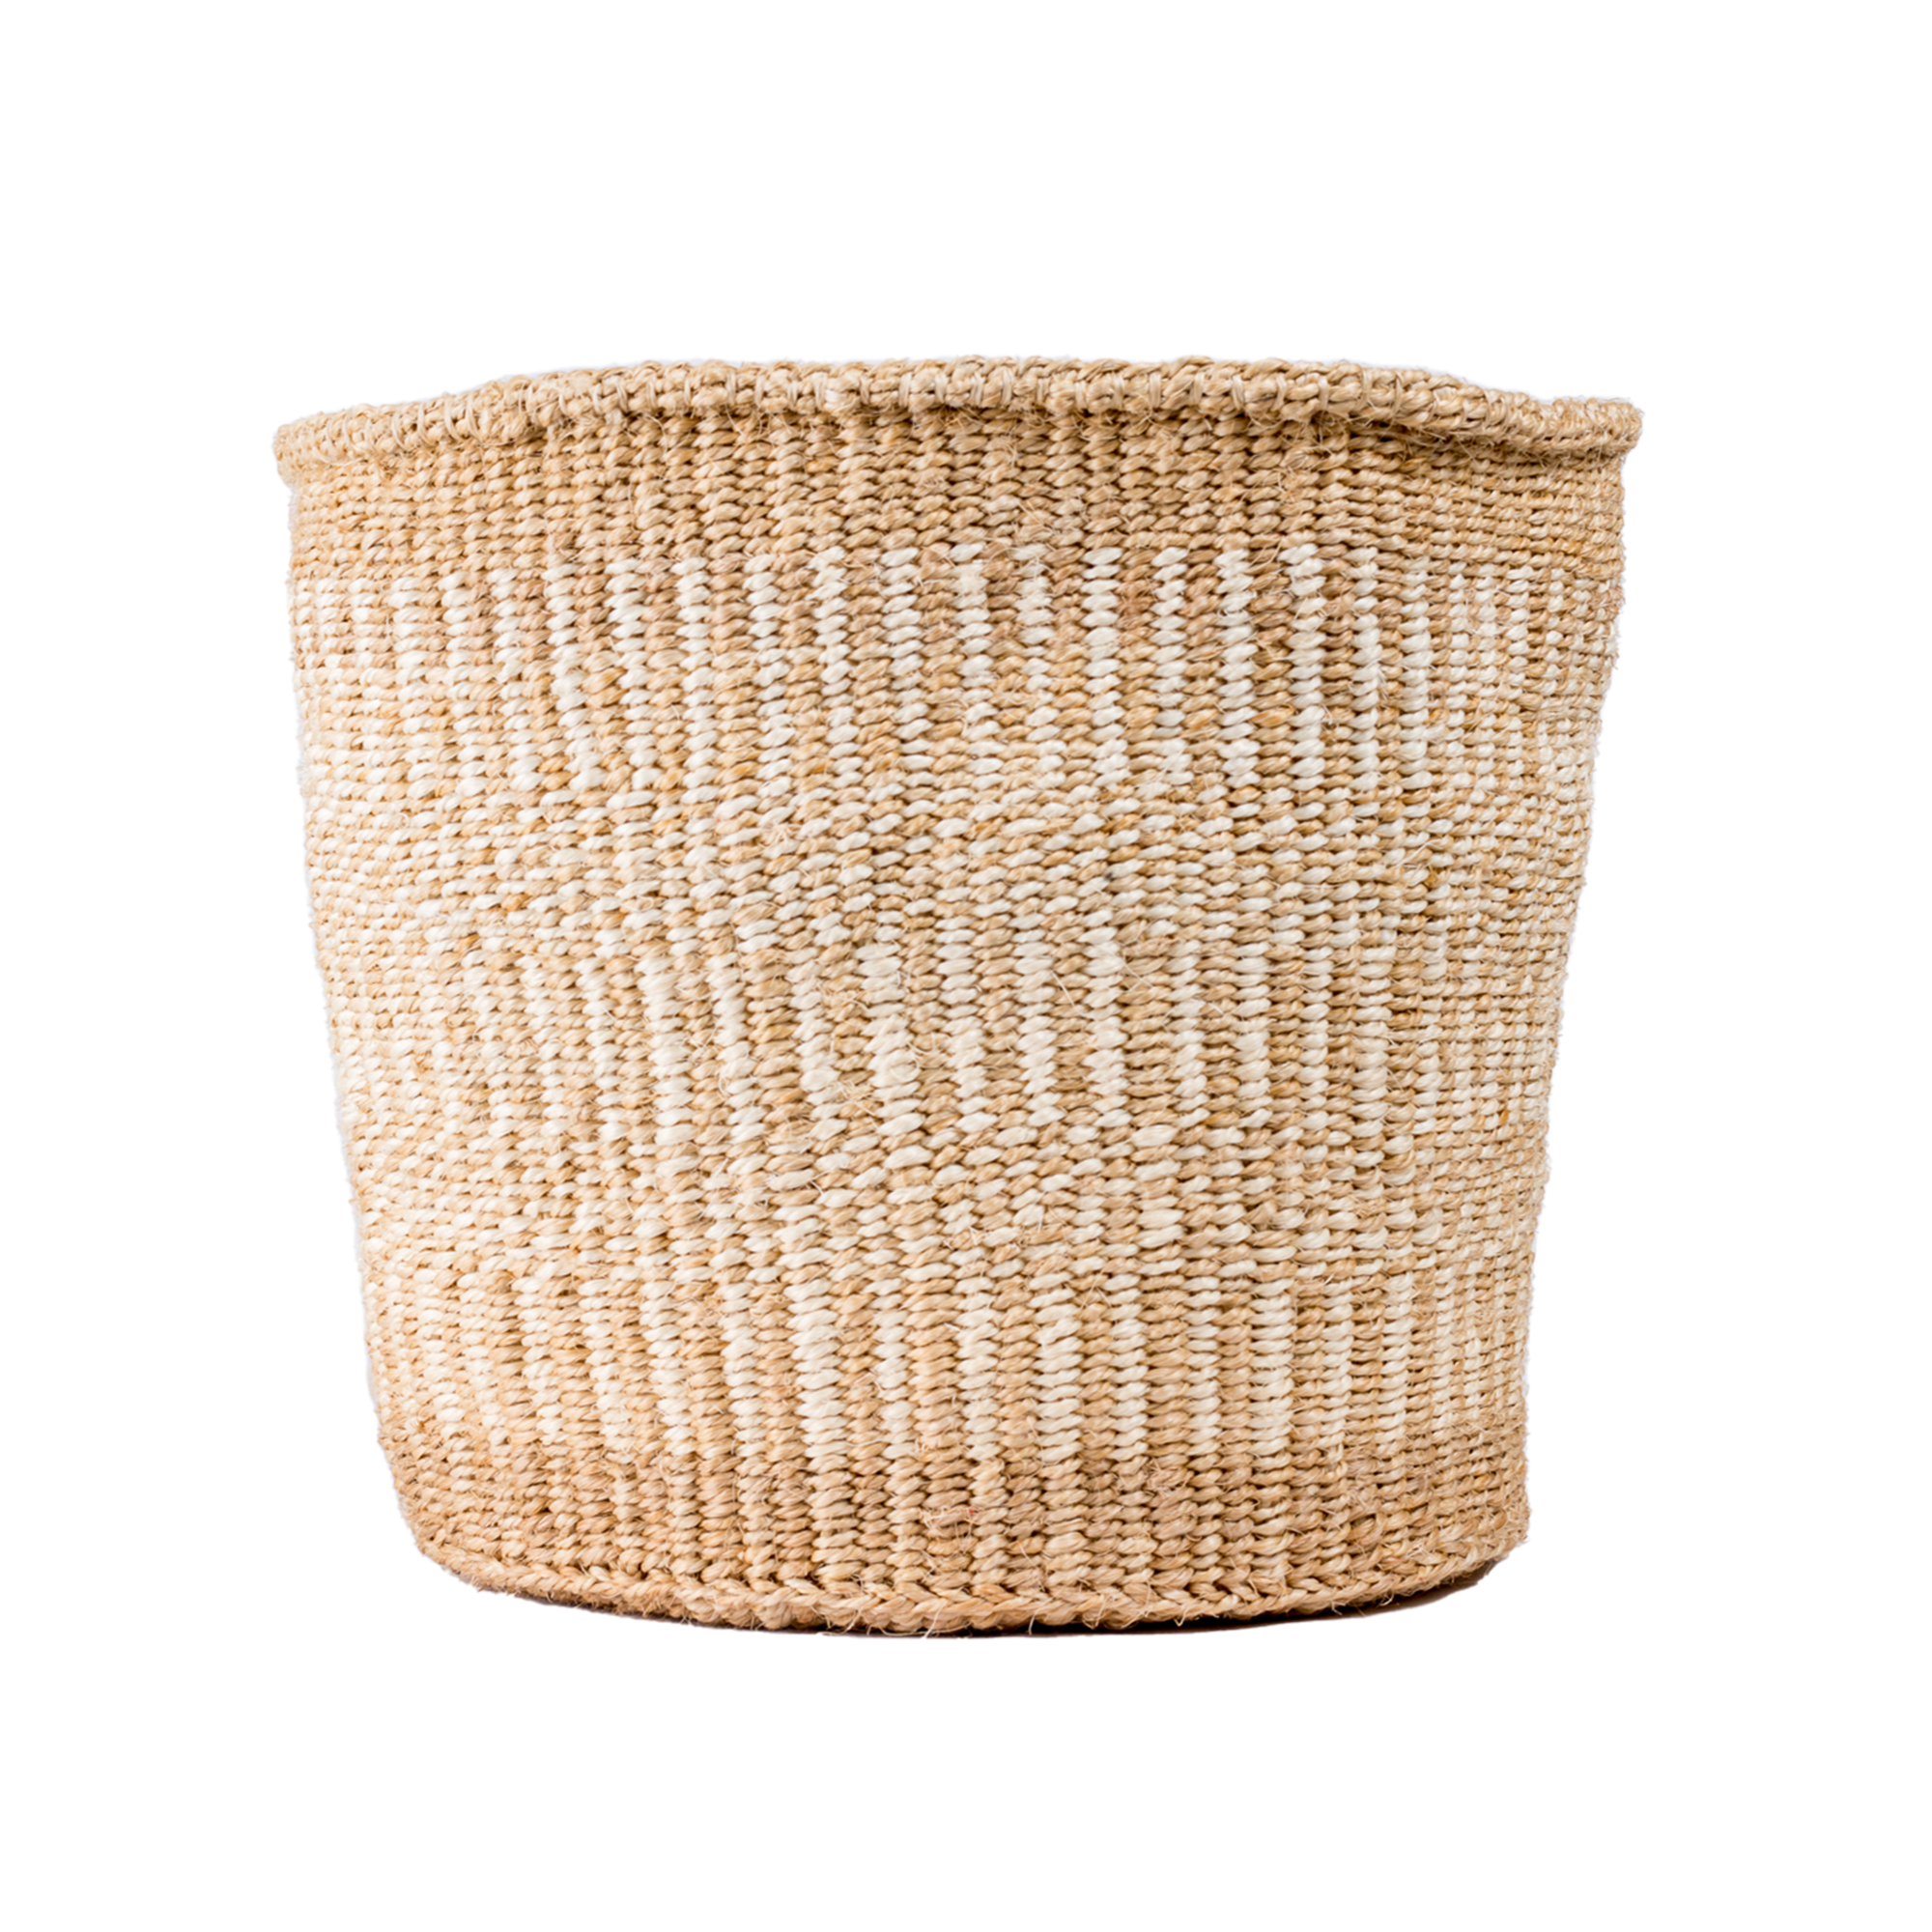 Weaved Rwandan Reed Buckets